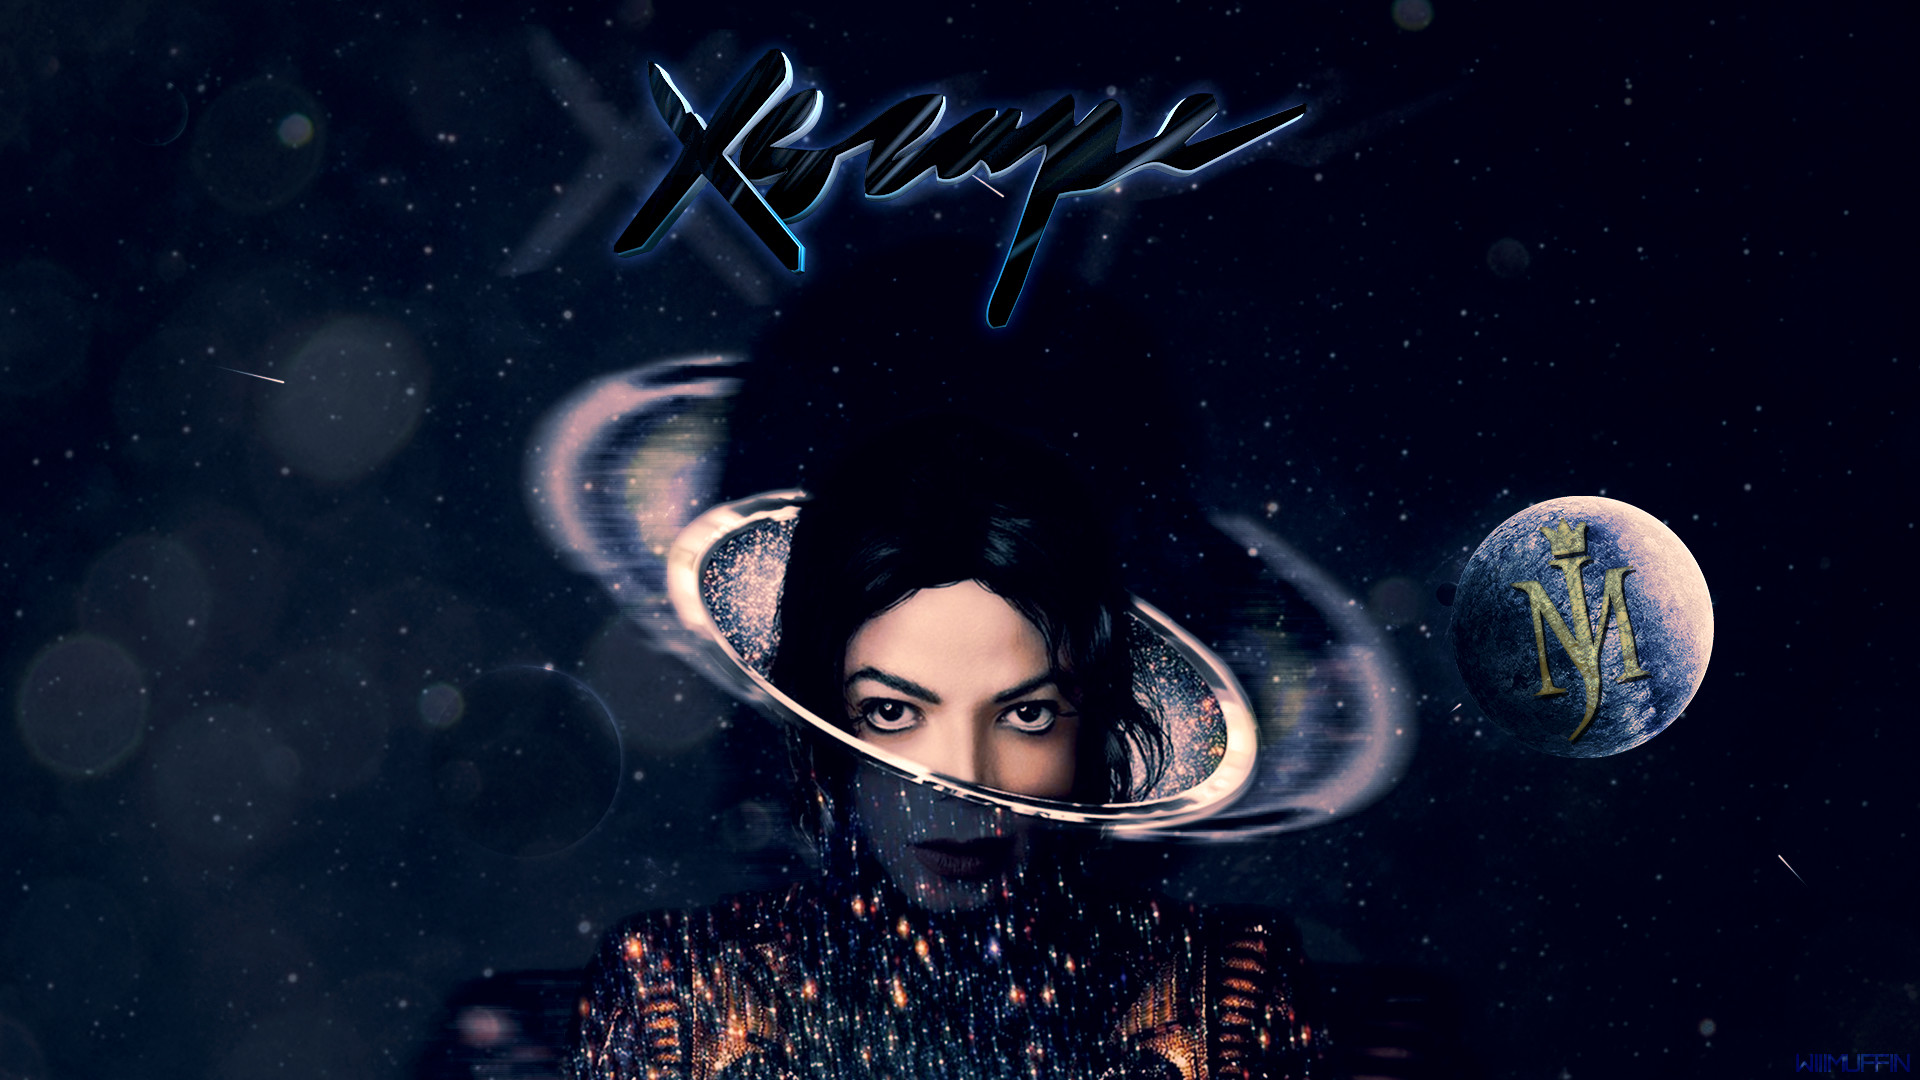 1920x1080 ... Michael Jackson - Xscape - Fan Wallpaper by Mathyvin